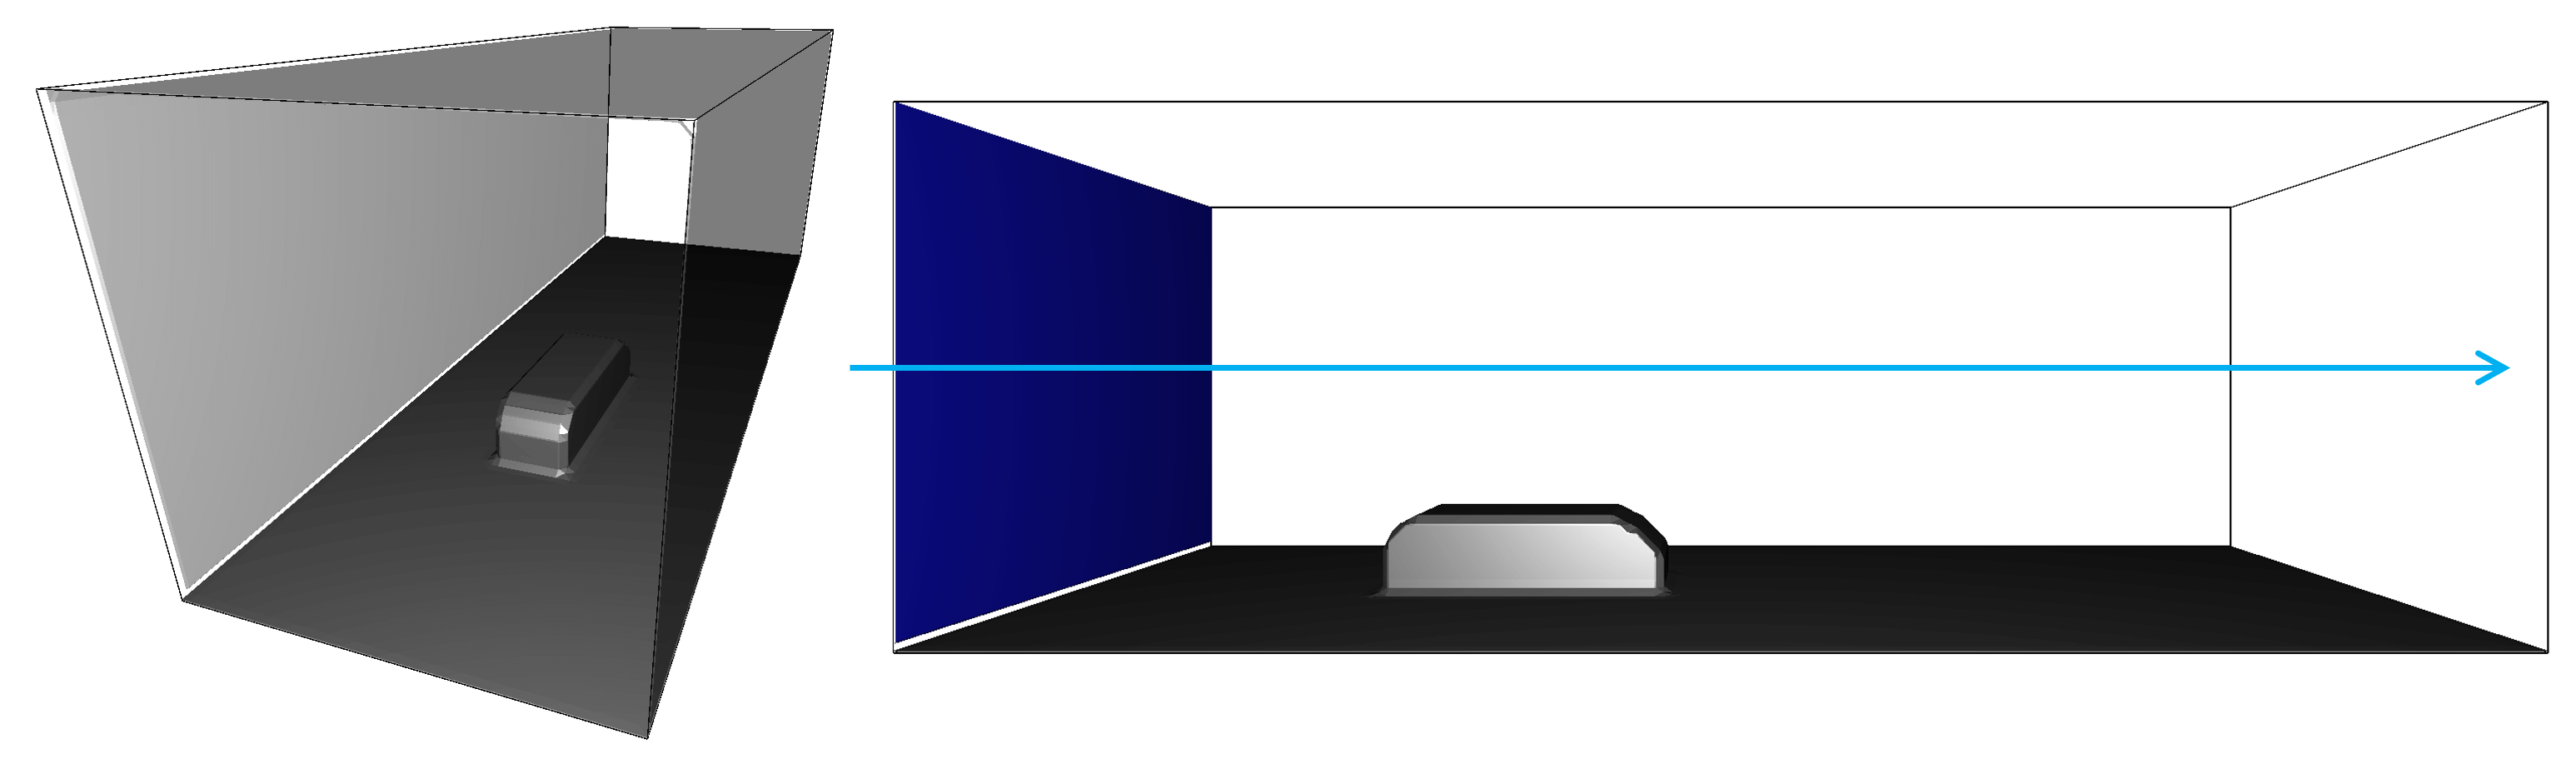 風洞3次元図（左：流入境界側から風洞及び対象物体を表示、右：側面側から対象物体及び流入境界を表示、矢印は主流方向を示す）。